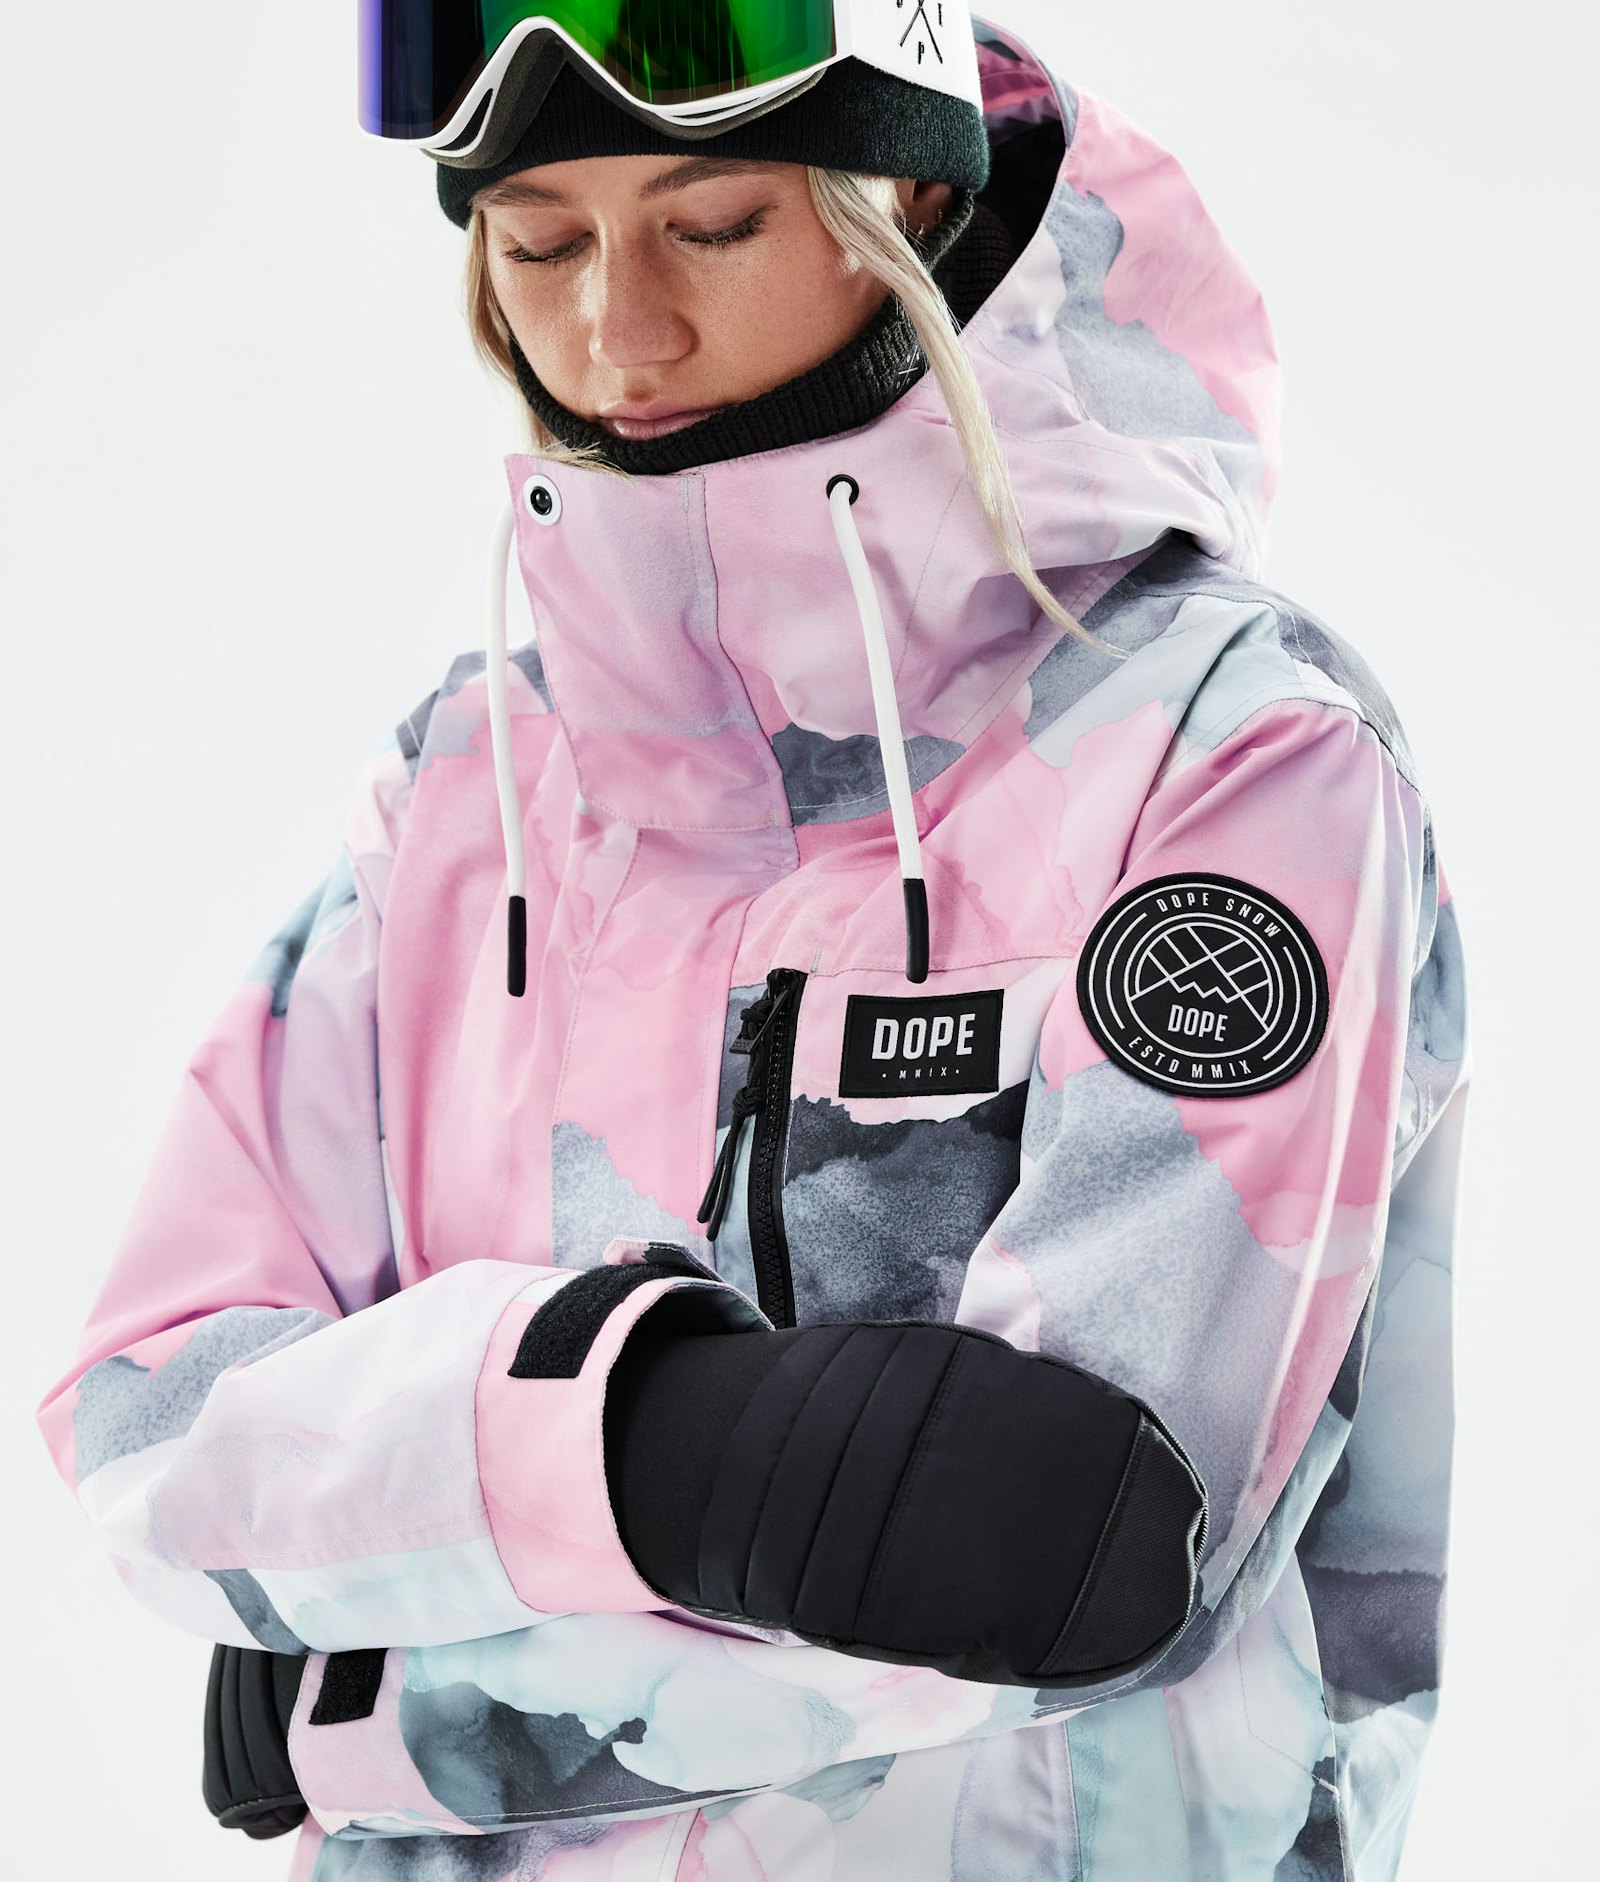 Dope Blizzard W Full Zip 2021 Snowboard Jacket Women Blot